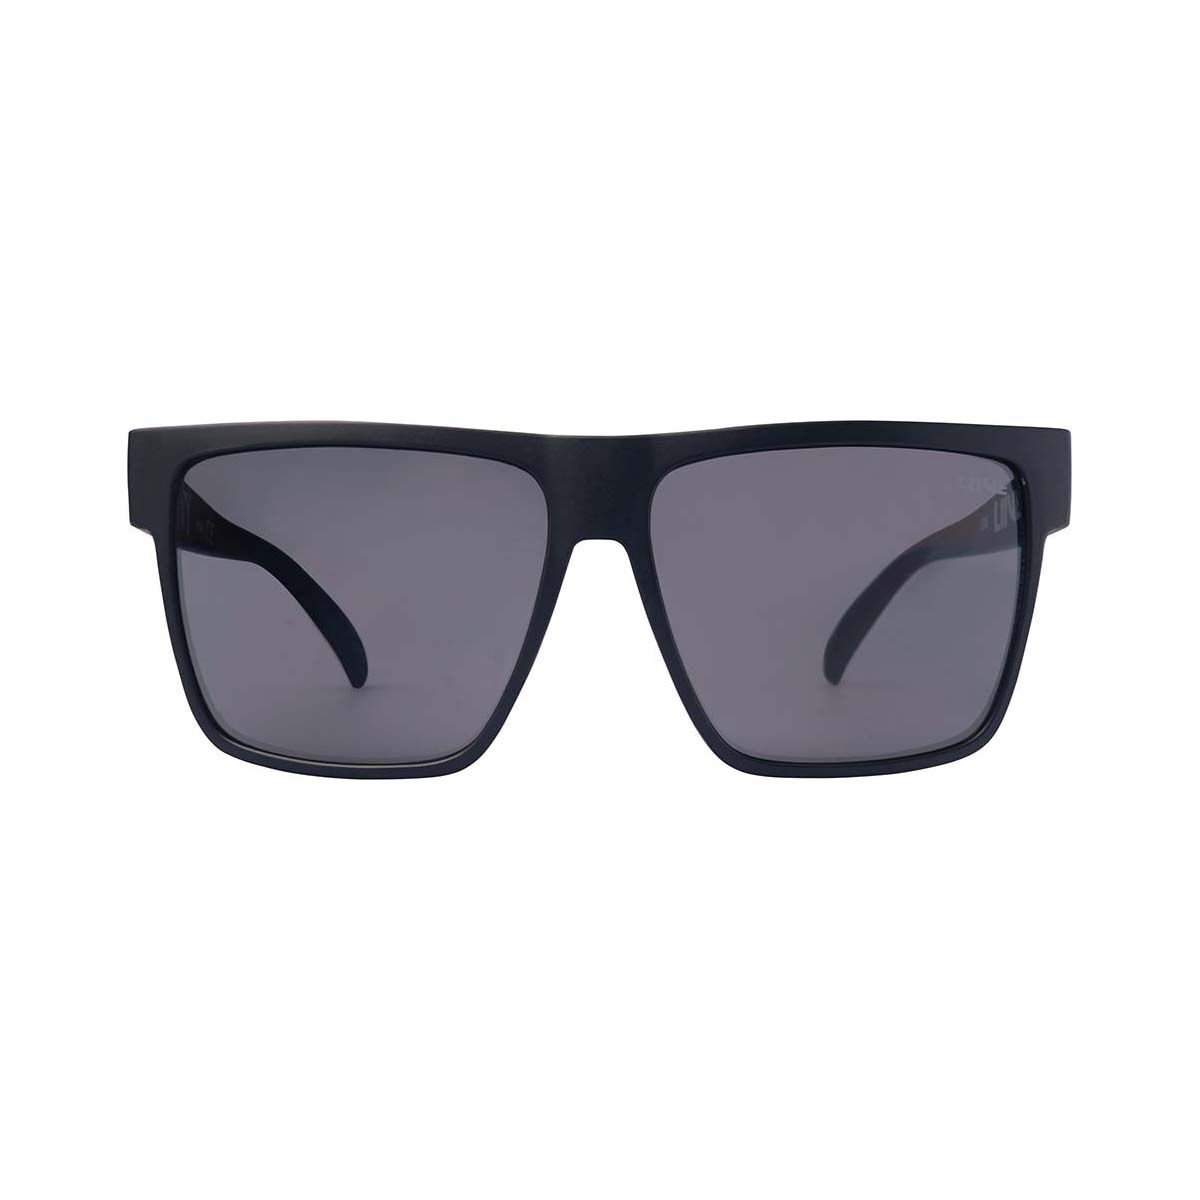 Liive Men’s Envy Sunglasses Matt Black with Grey Lens | BCF